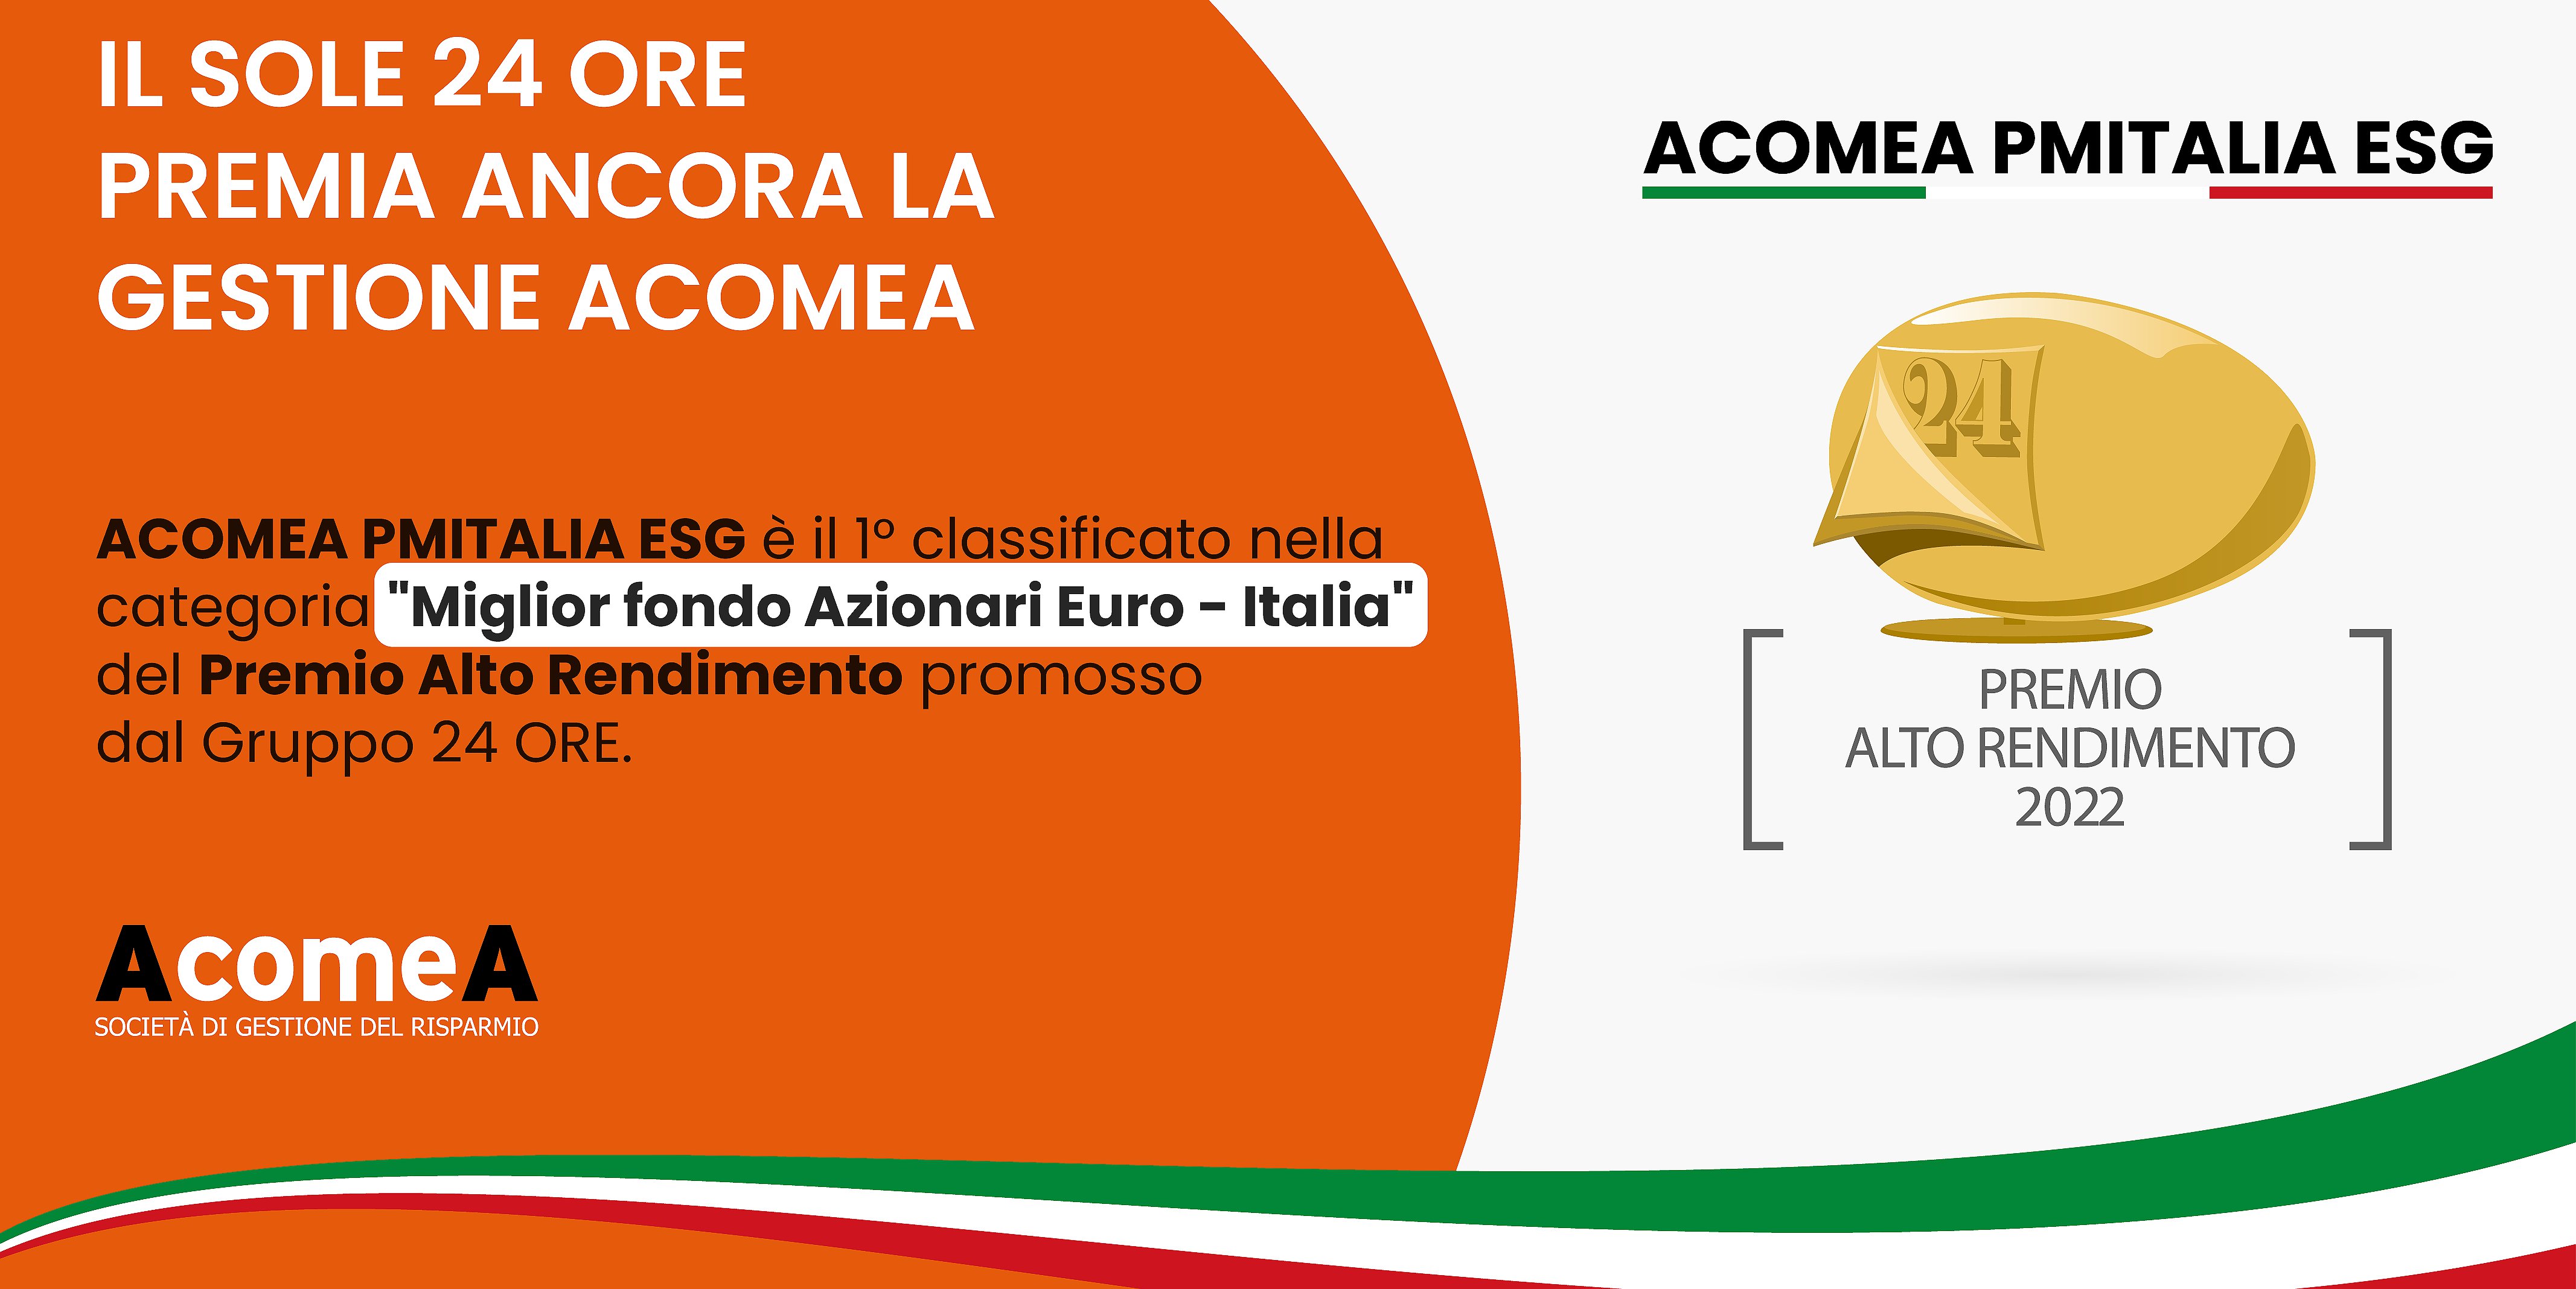 AcomeA PMItalia ESG premiato come "Miglior fondo Azionari Euro-Italia" da Il Sole 24 Ore